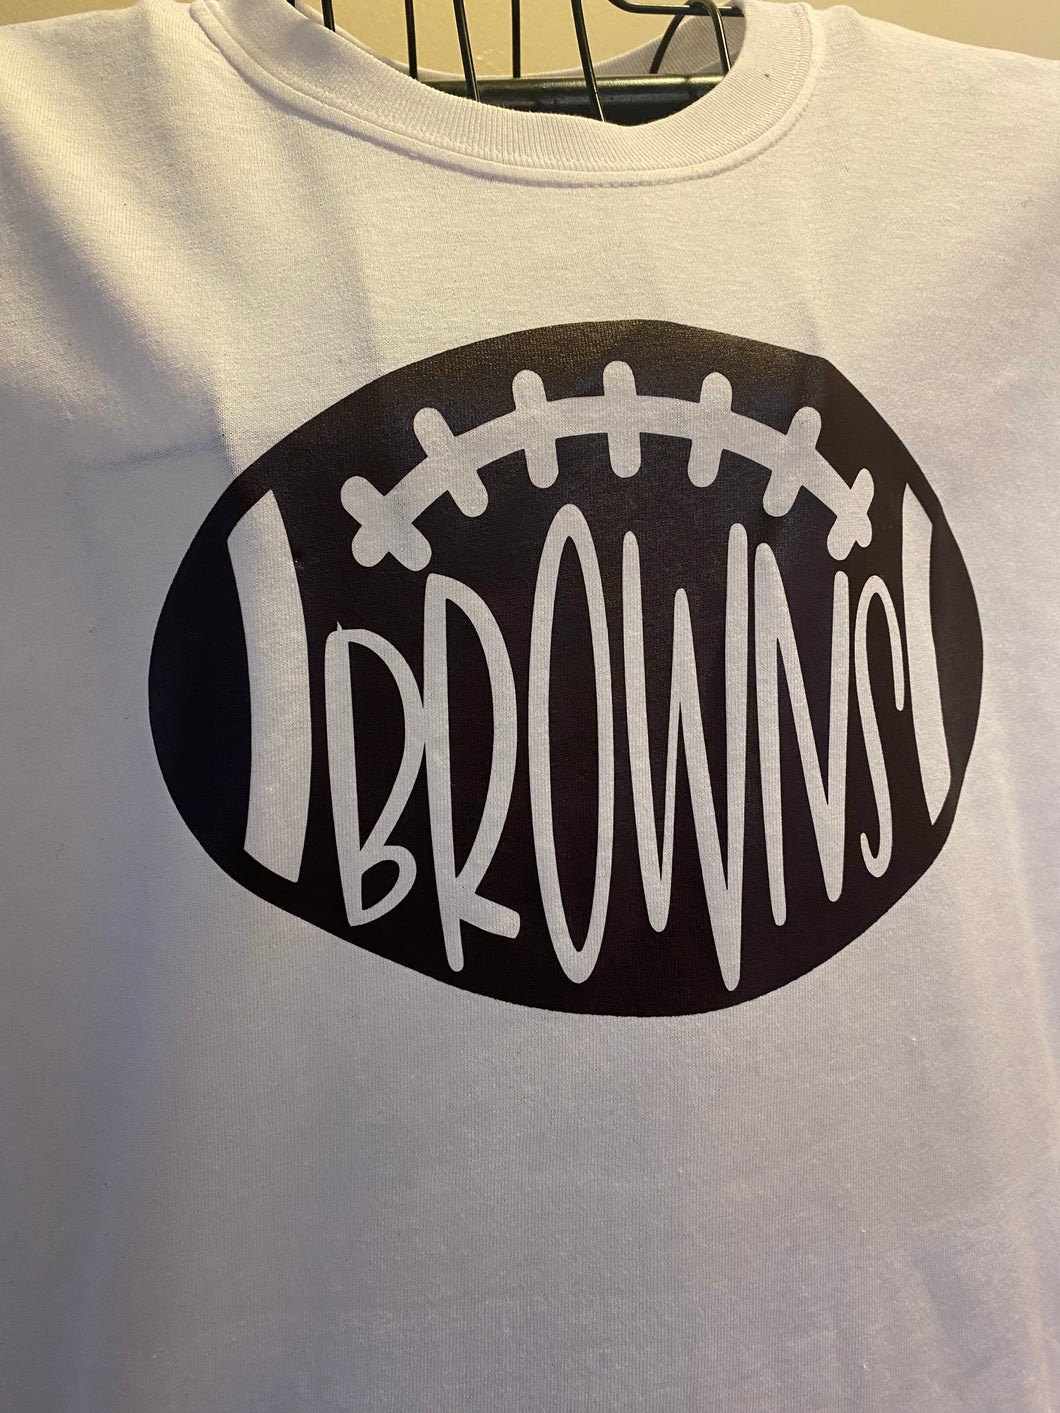 Plain Browns Football